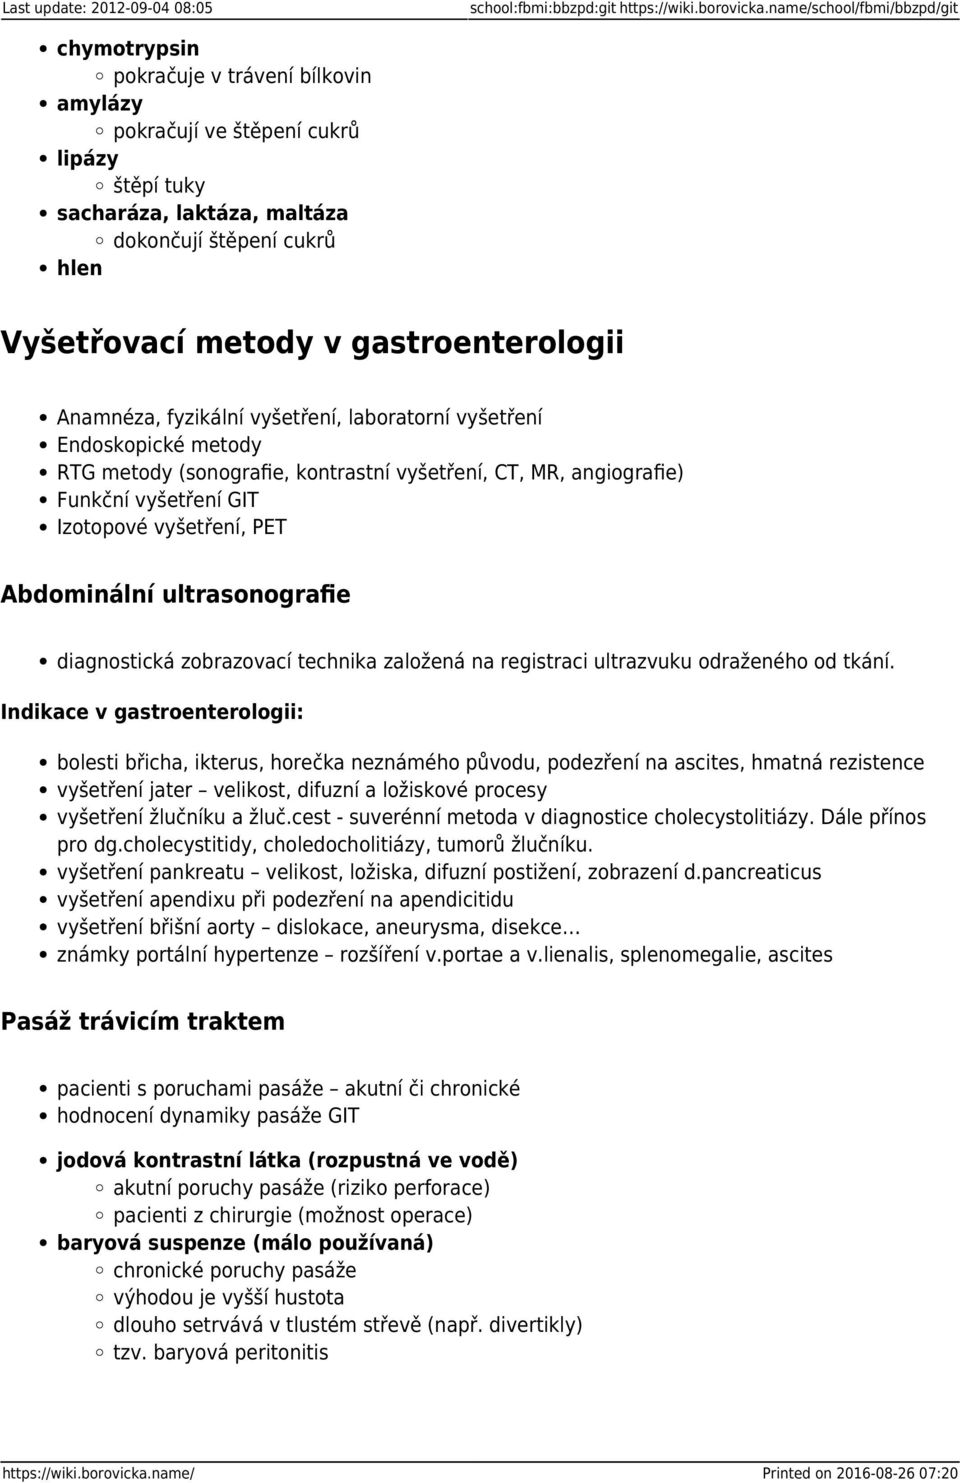 gastroenterologii Anamnéza, fyzikální vyšetření, laboratorní vyšetření Endoskopické metody RTG metody (sonografie, kontrastní vyšetření, CT, MR, angiografie) Funkční vyšetření GIT Izotopové